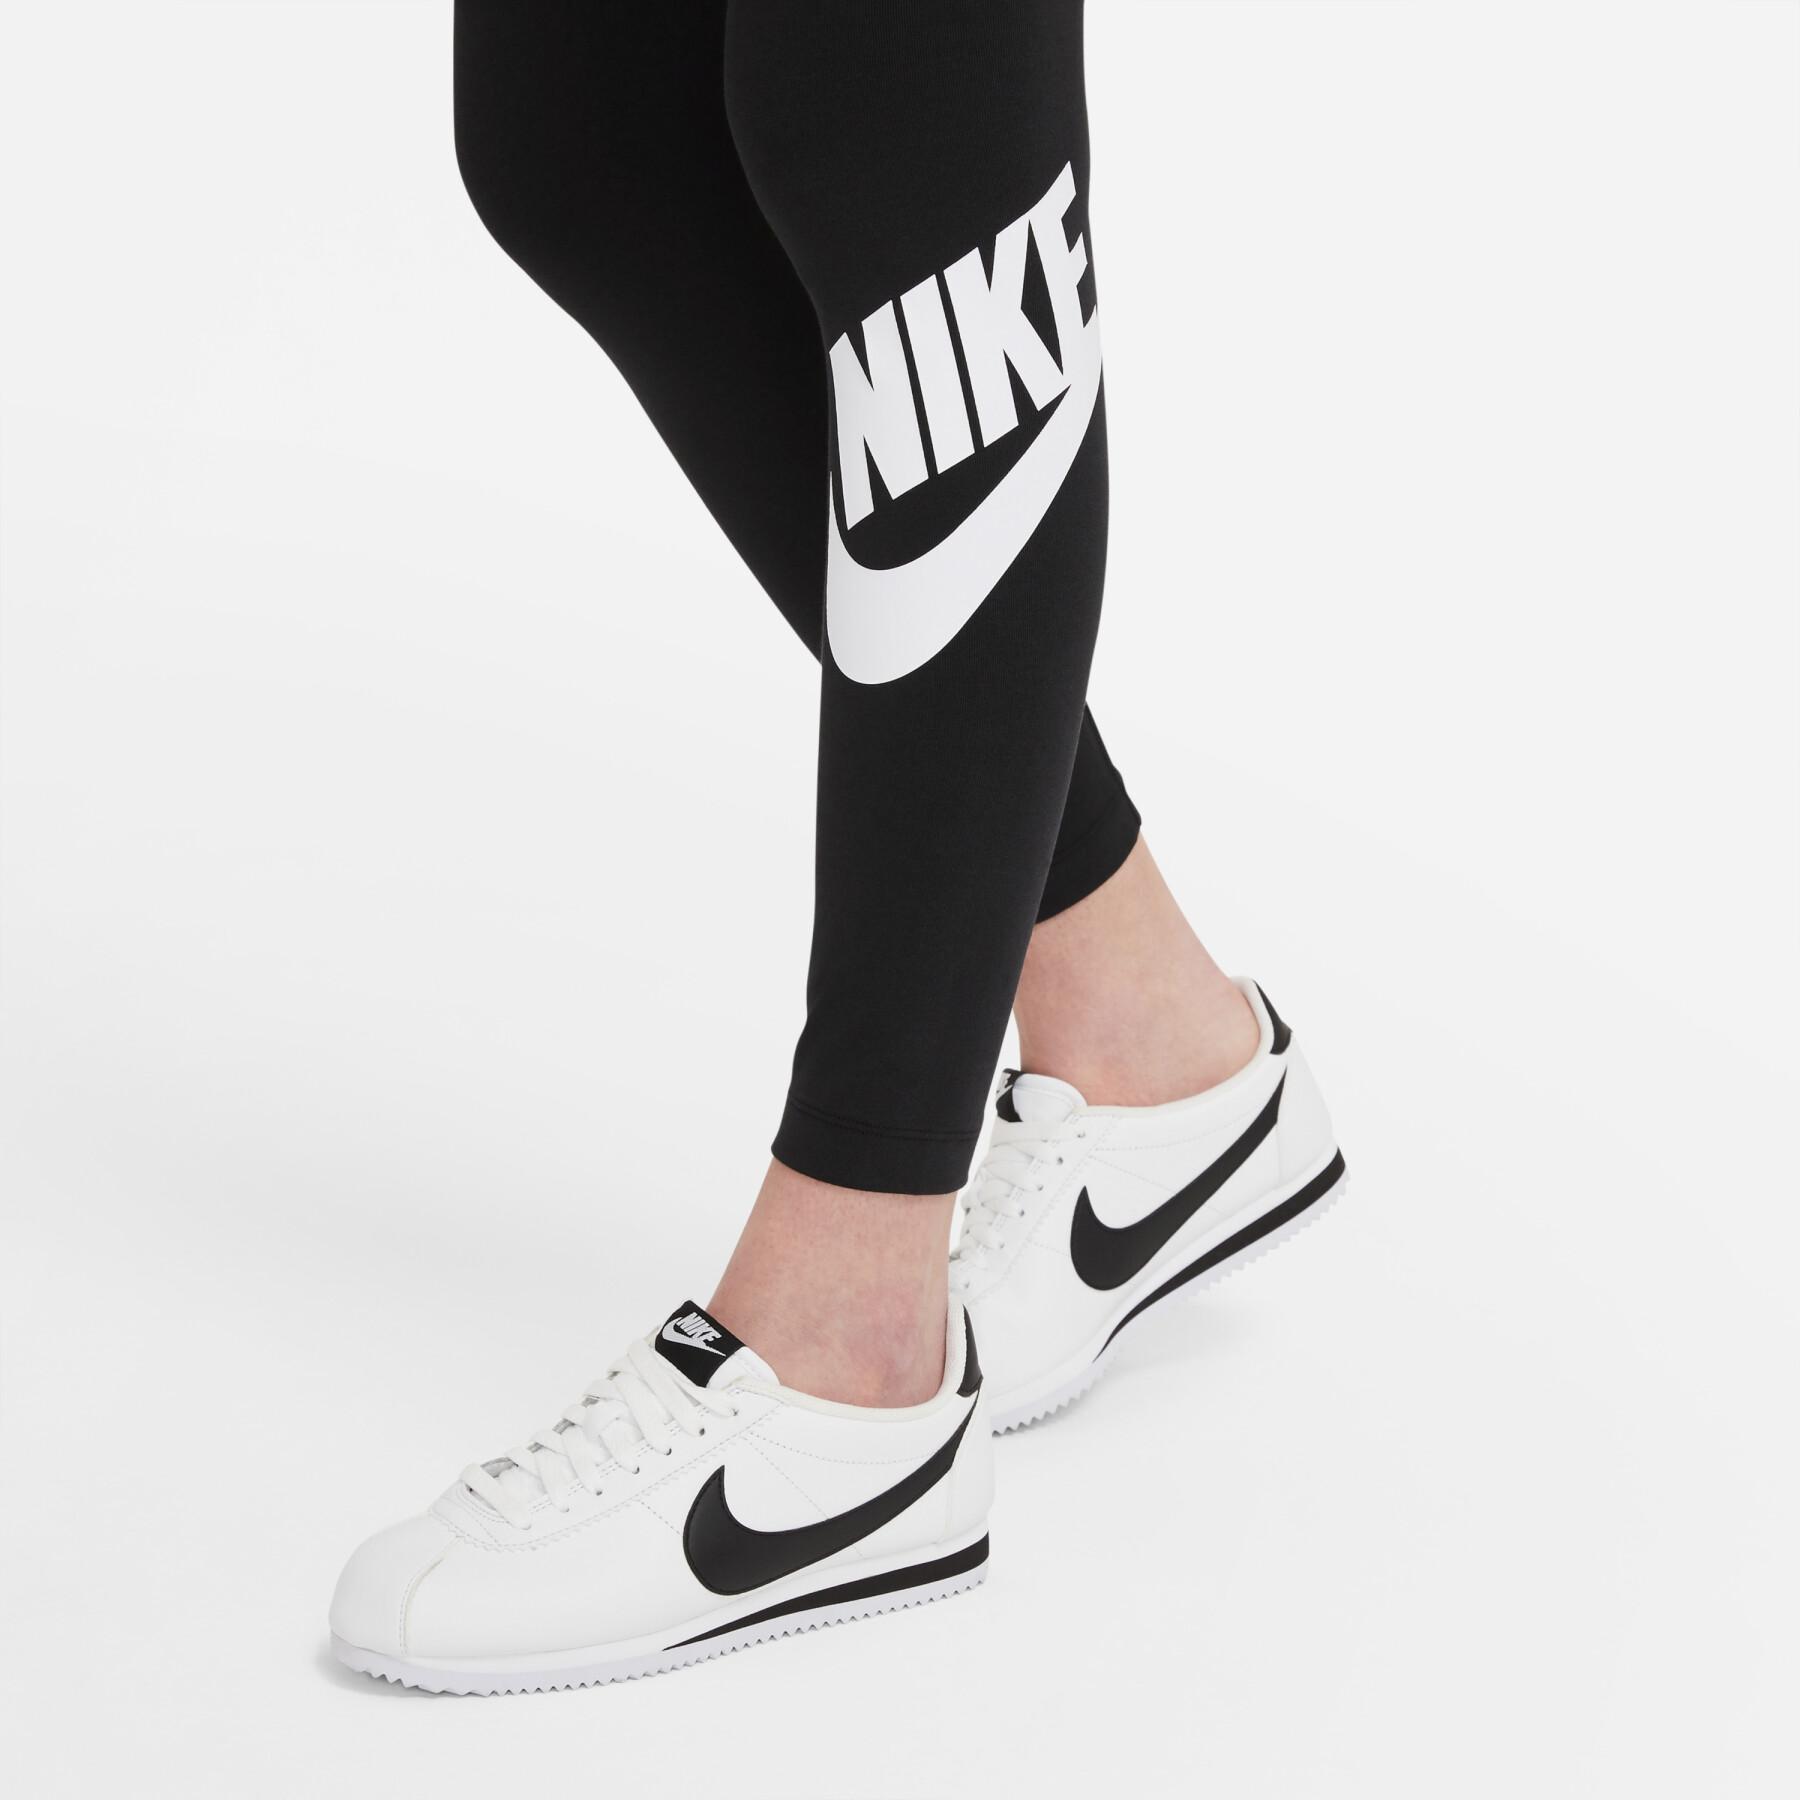 Nike Sportswear Essential 7/8 gray leggings for women